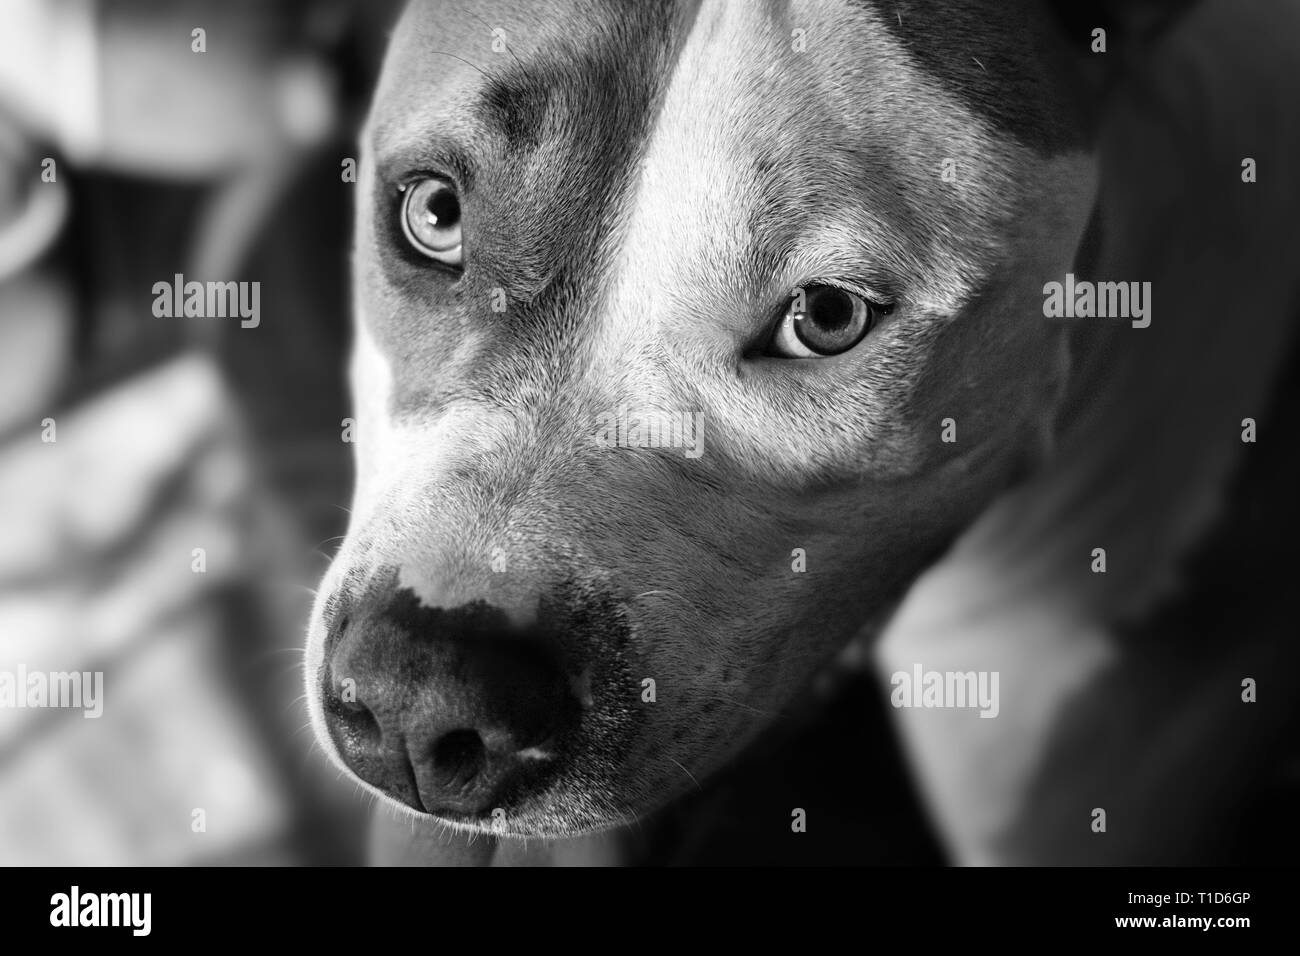 Ein Mischlingshund (American Staffordshire Pit Bull Terrier und American Pit Bull Terrier) (Canis lupus familiaris) schaut liebevoll auf. Stockfoto